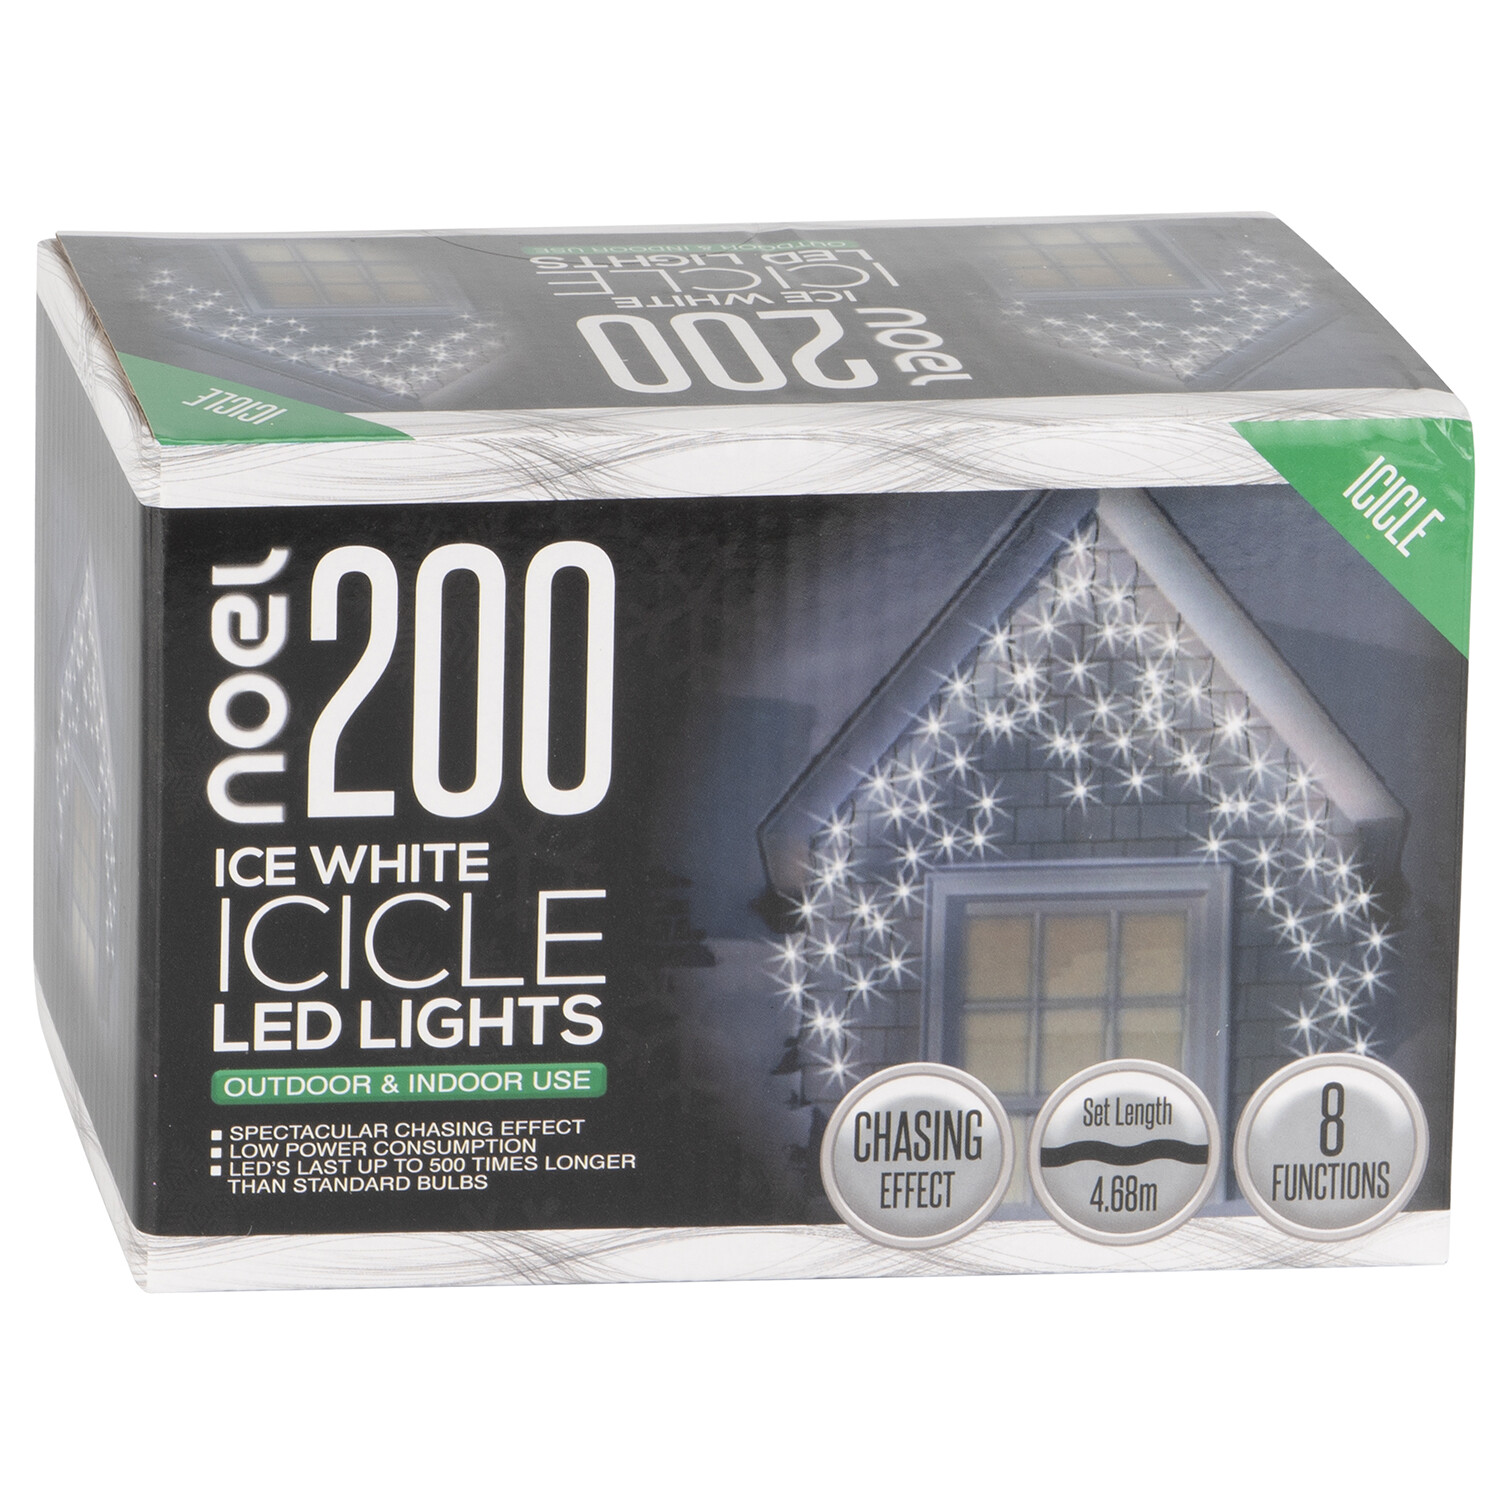 Noel 200 Ice White LED Icicle Lights Image 2